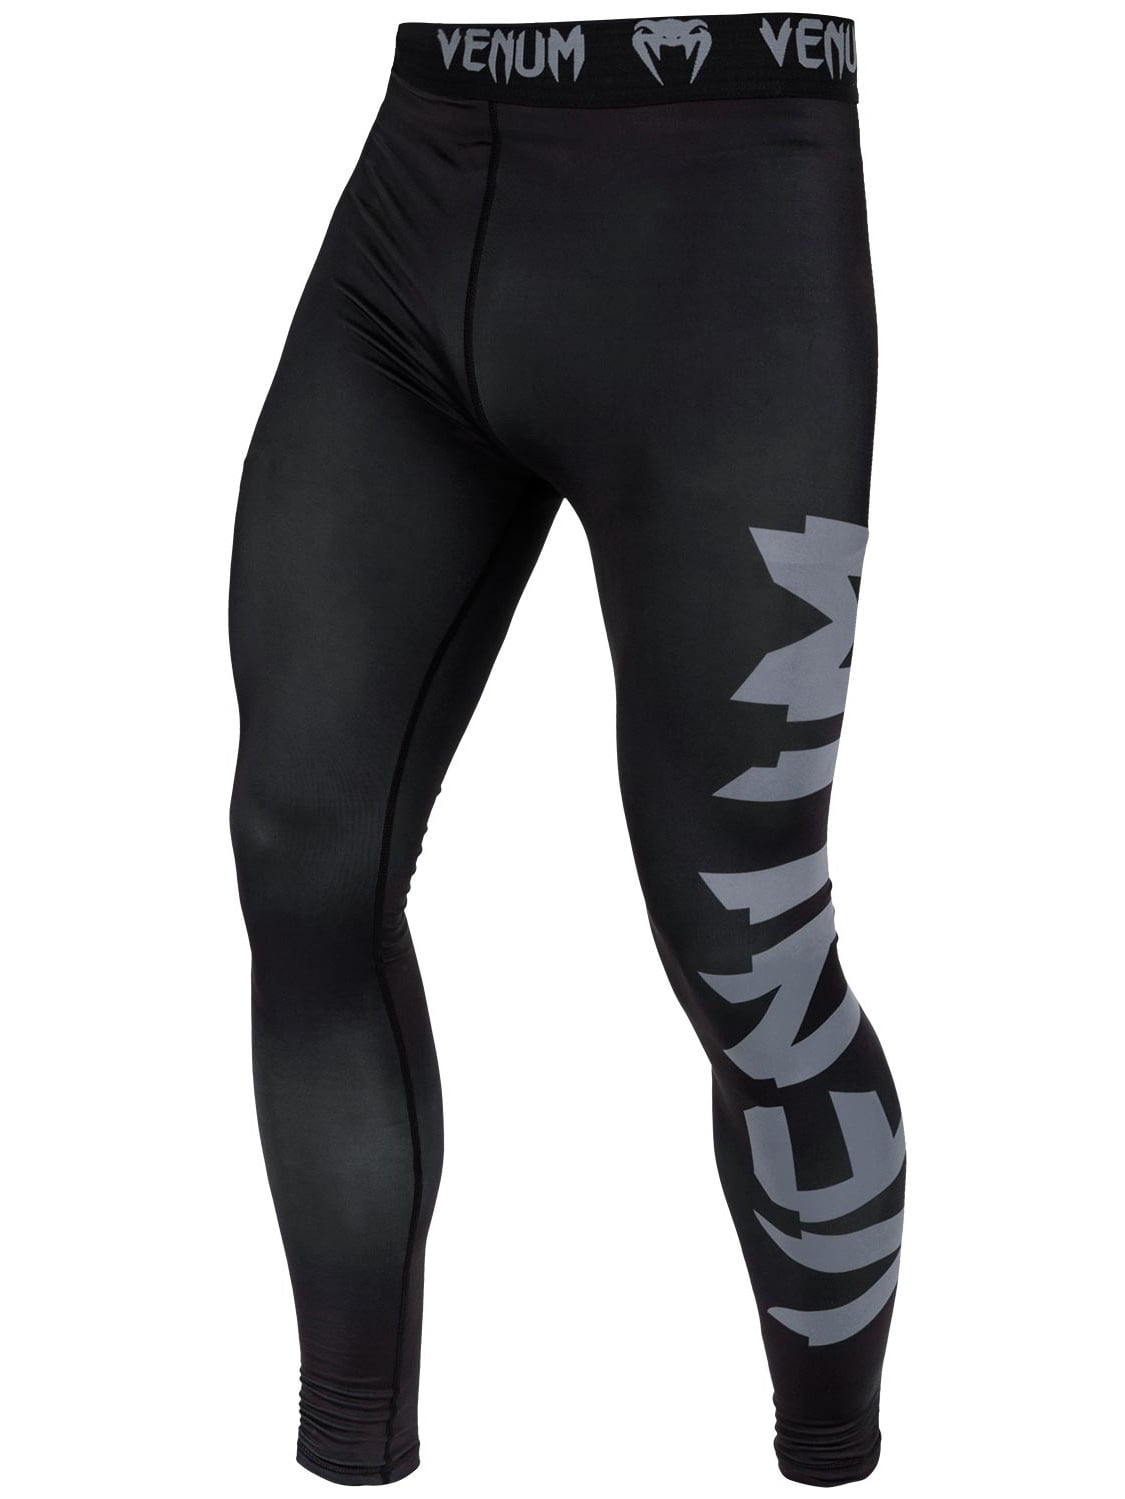 Venum Men's Giant Compression Pants Spats Black/Grey - Walmart.com